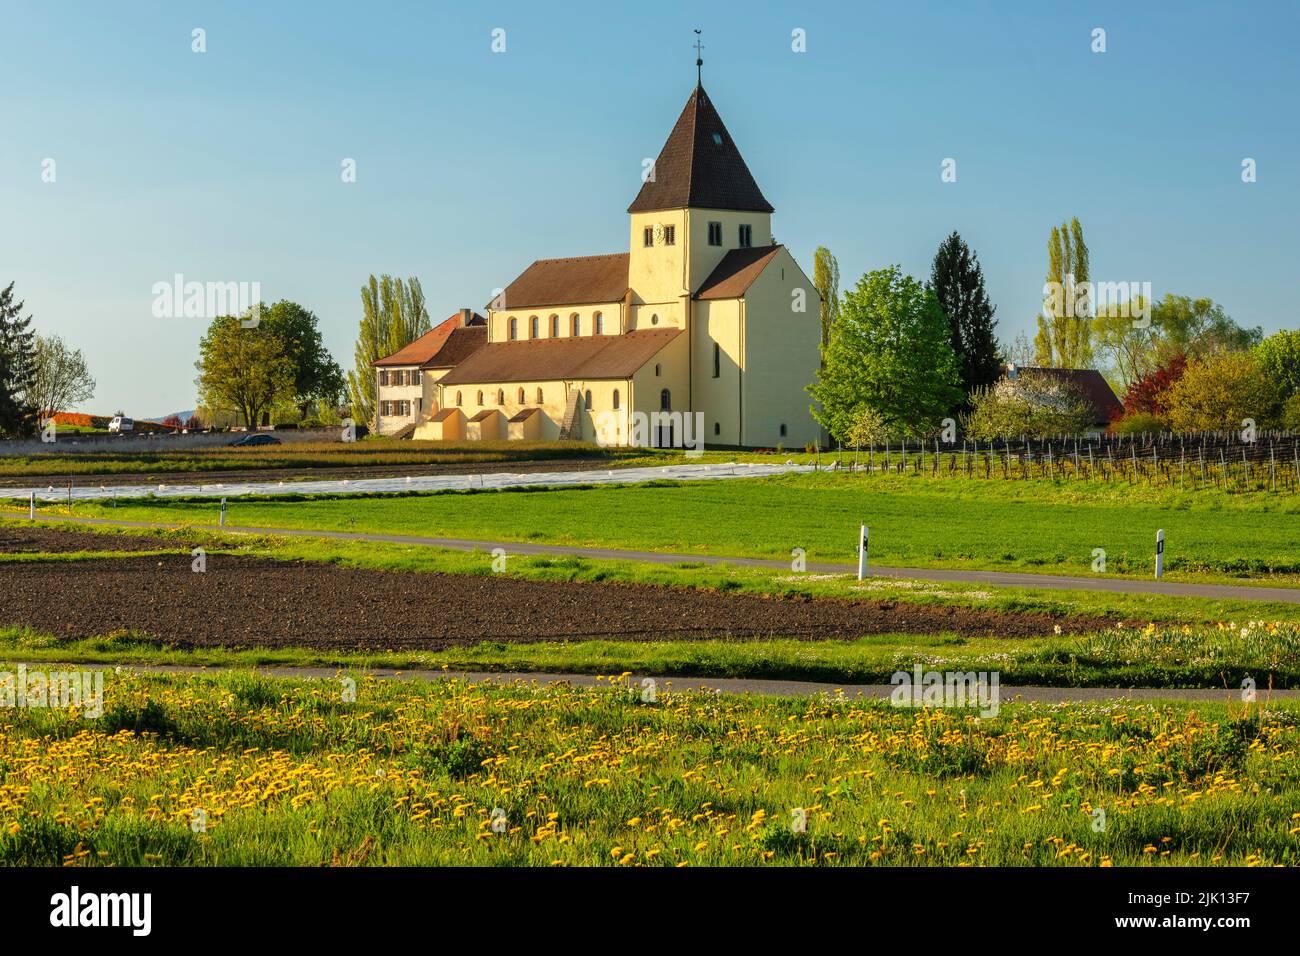 Église Saint-Georg, Oberzell, site classé au patrimoine mondial de l'UNESCO, île de Reichenau, lac de Constance, Bade-Wurtemberg, Allemagne, Europe Banque D'Images